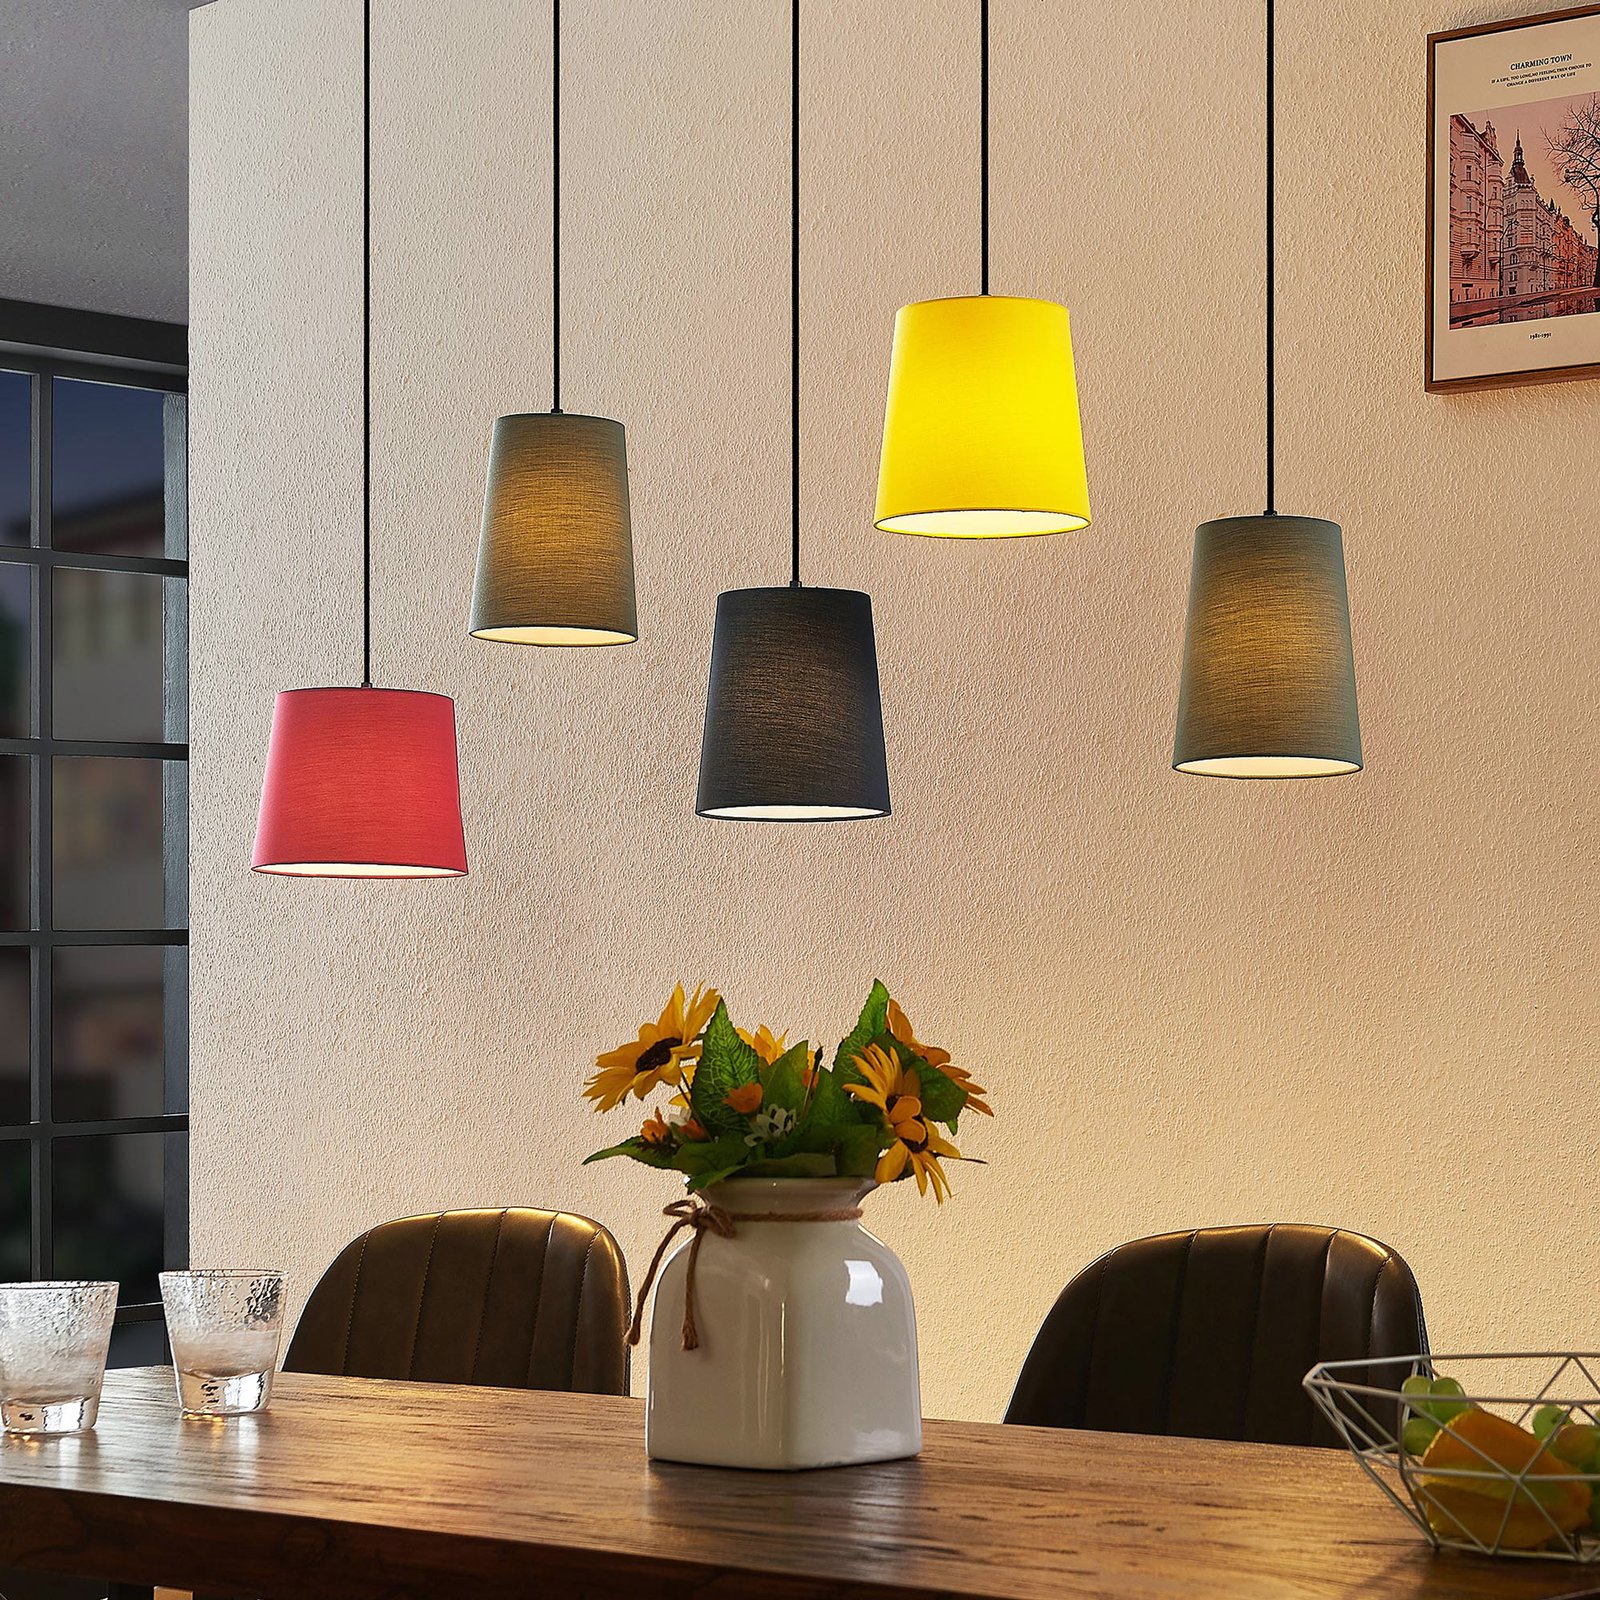 Lindby Amilia hanglamp, kappen bont, 5-lamps